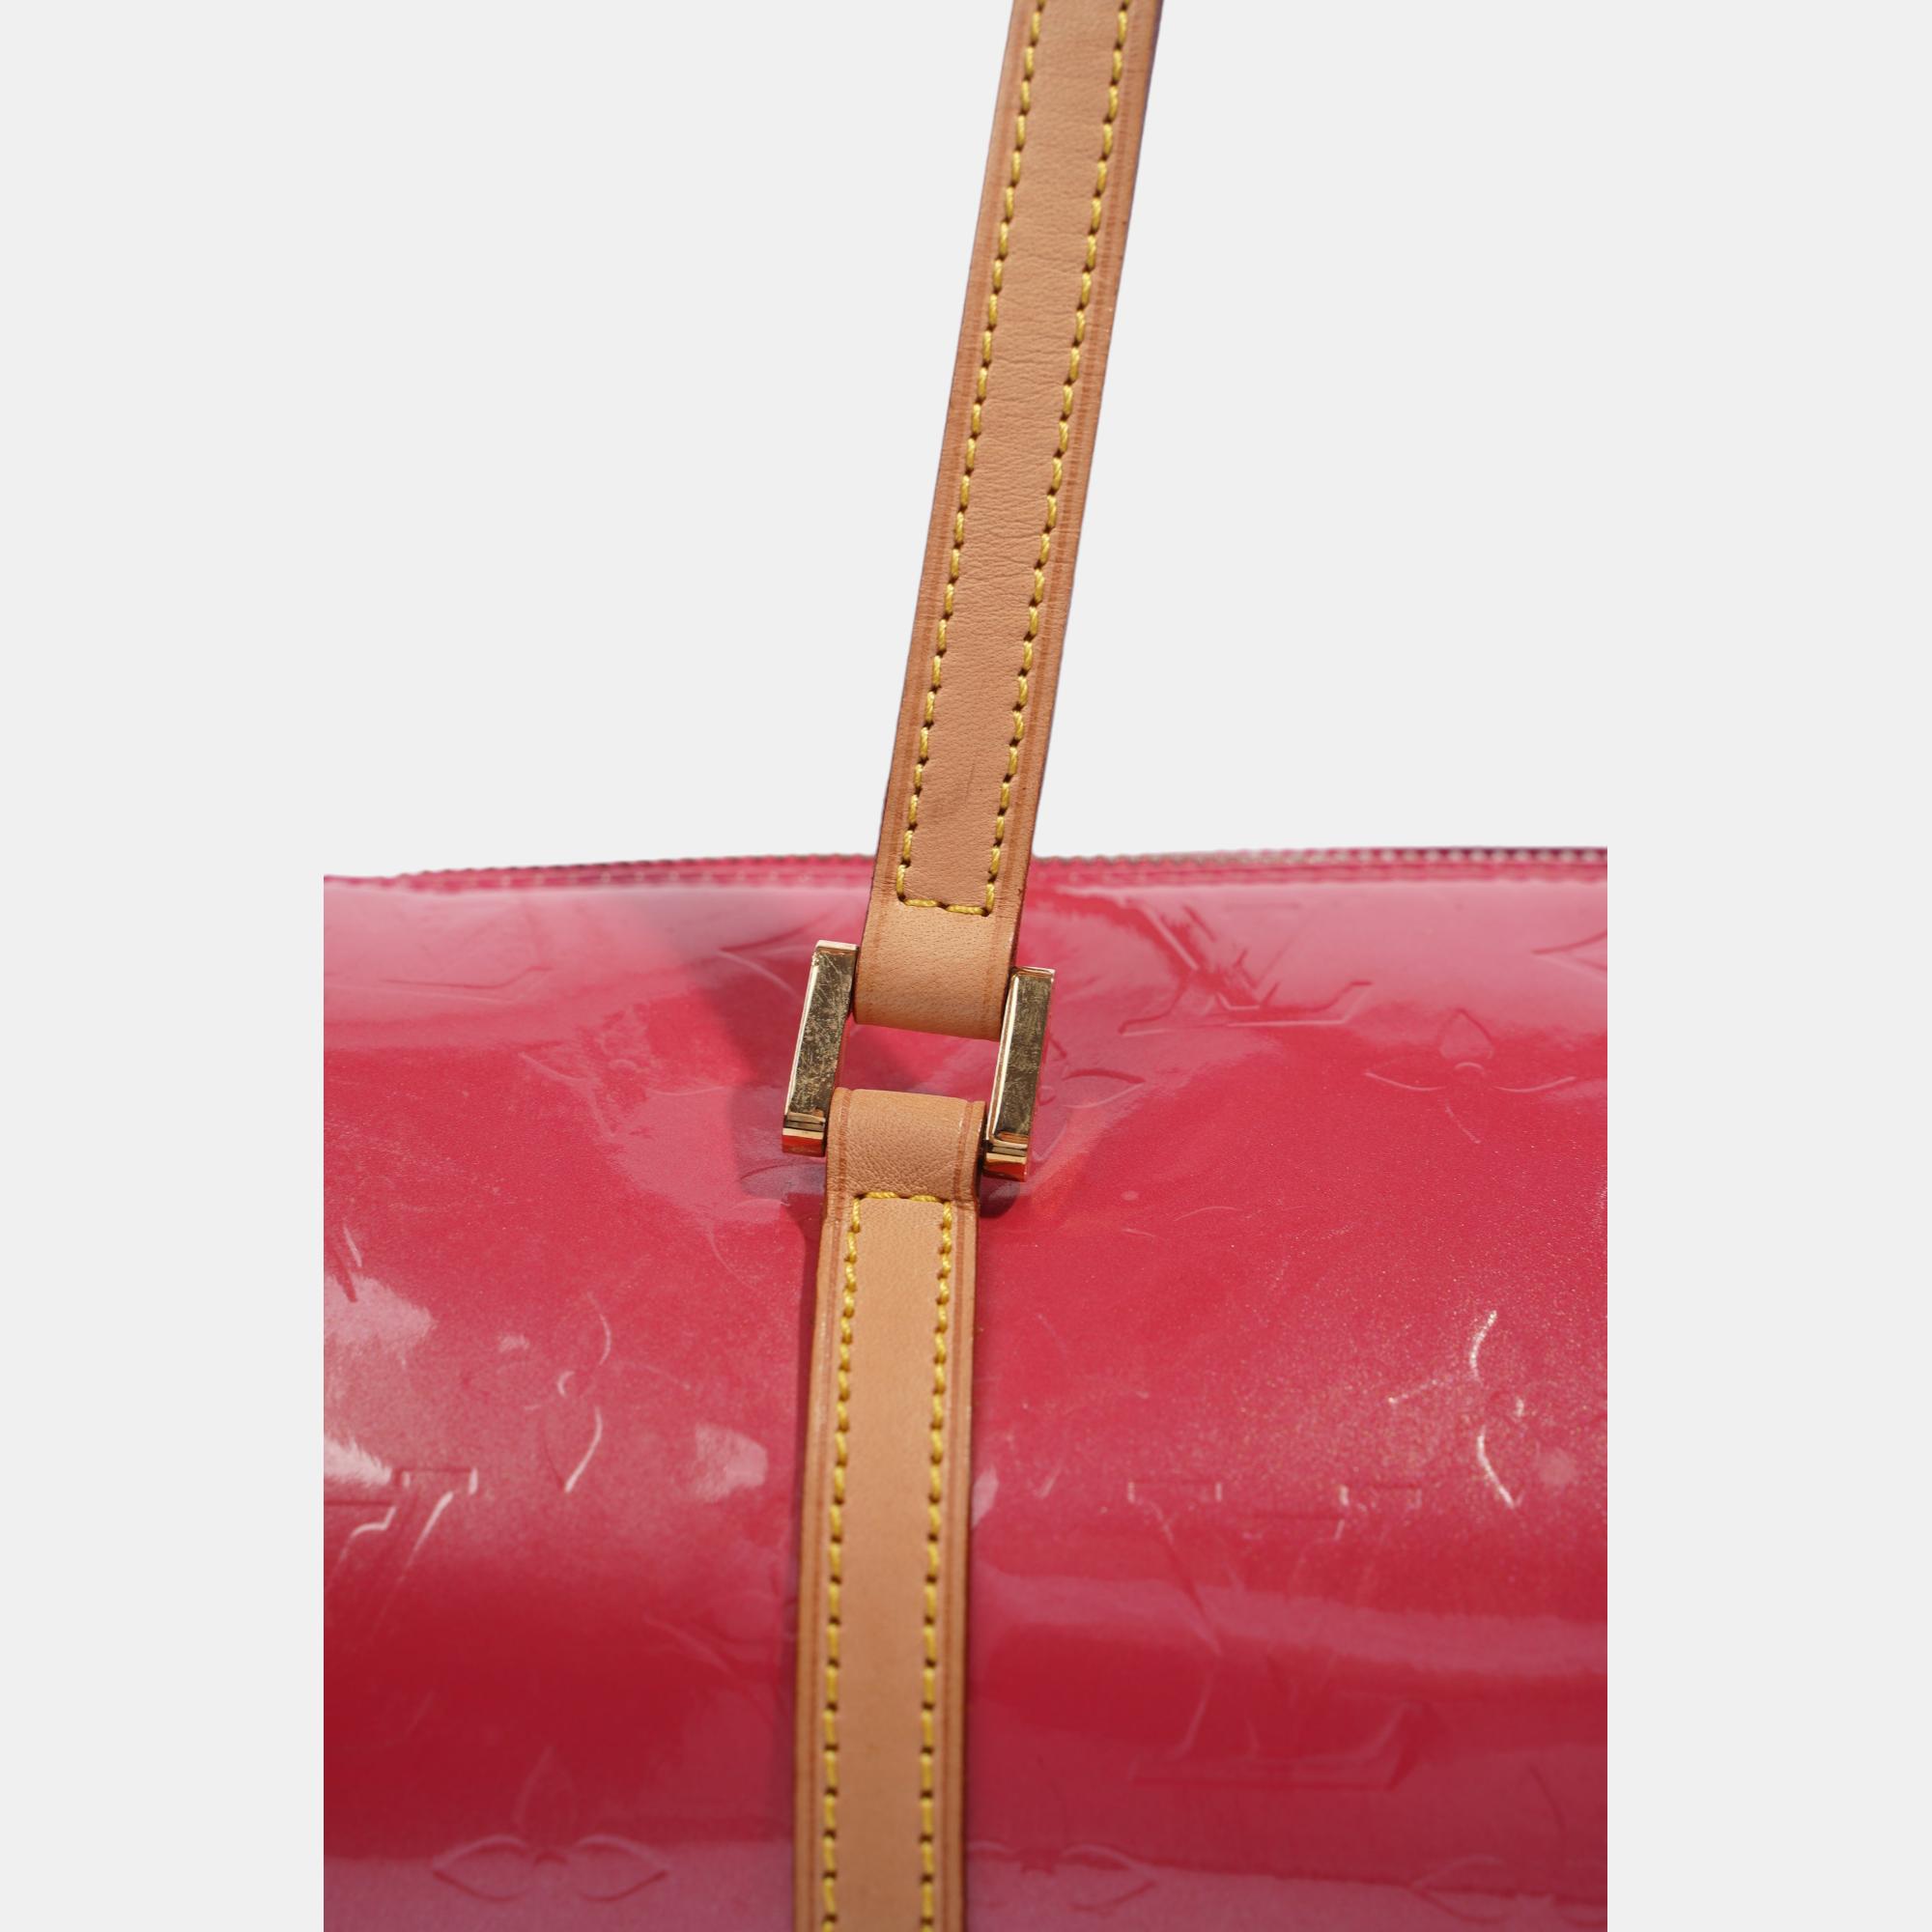 Louis Vuitton Papillon Pink / Beige Vernis Leather 30